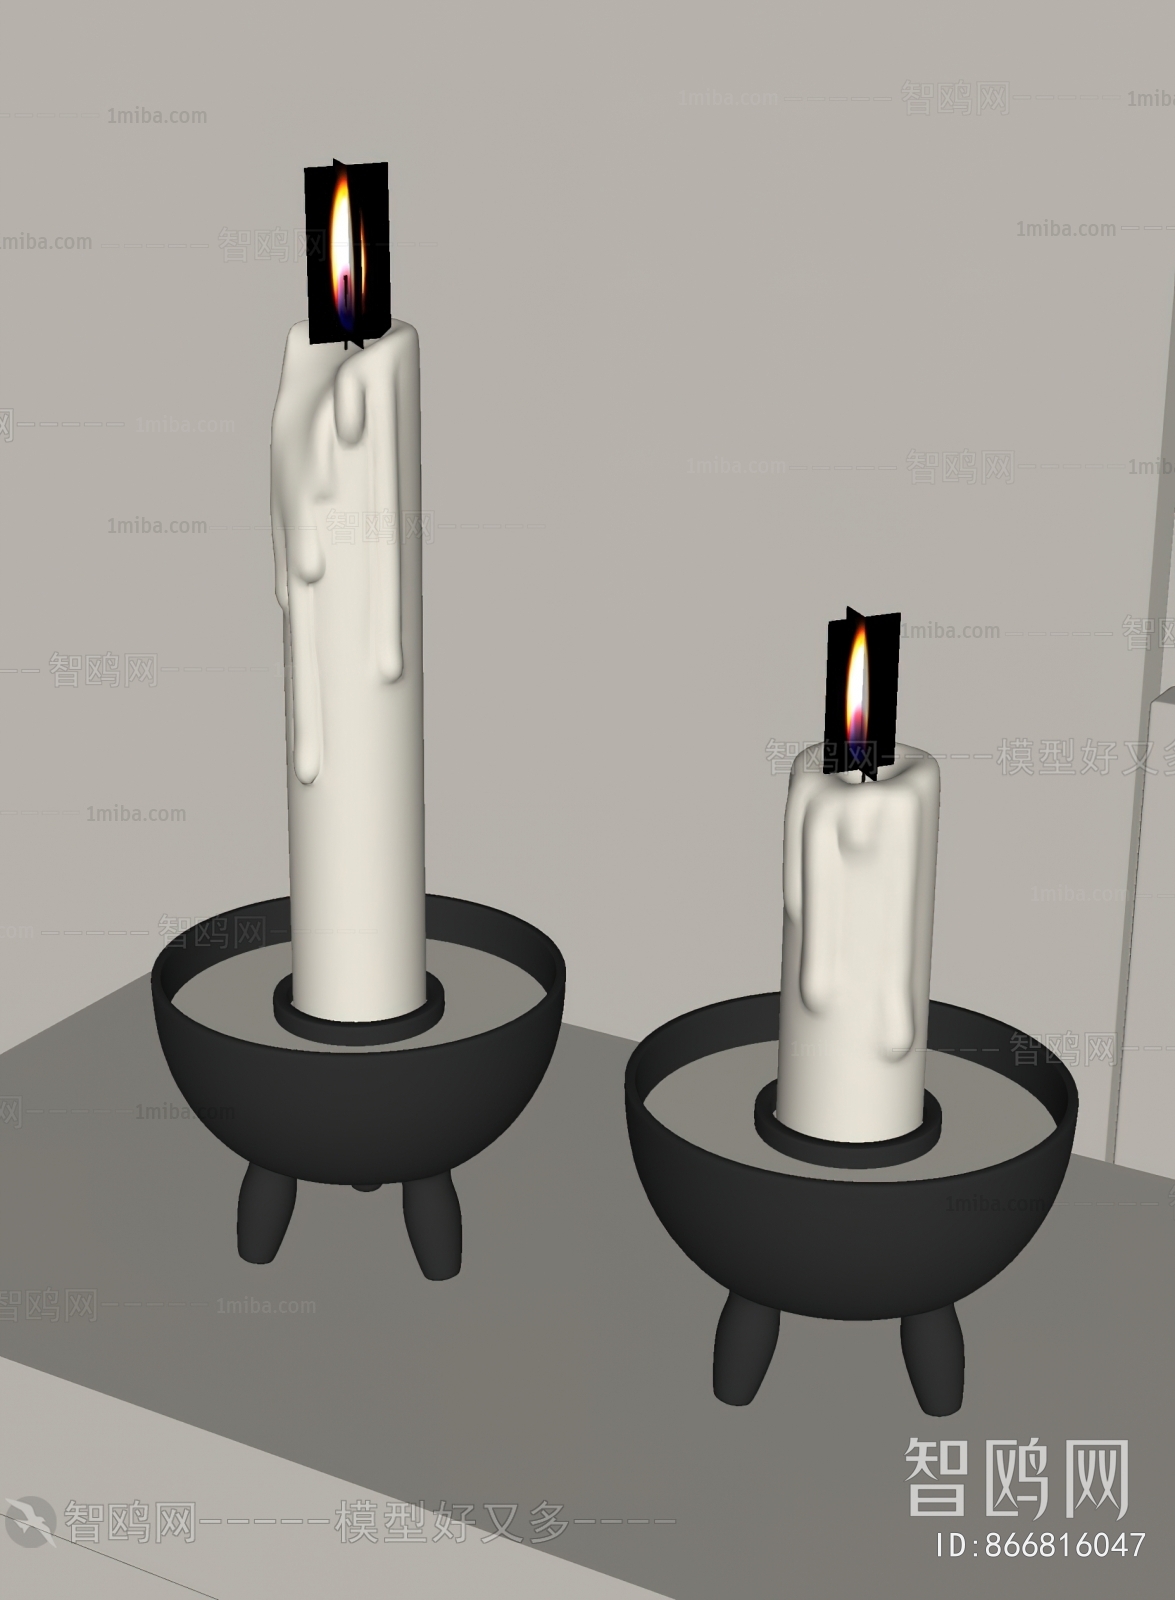 Modern Candlestick